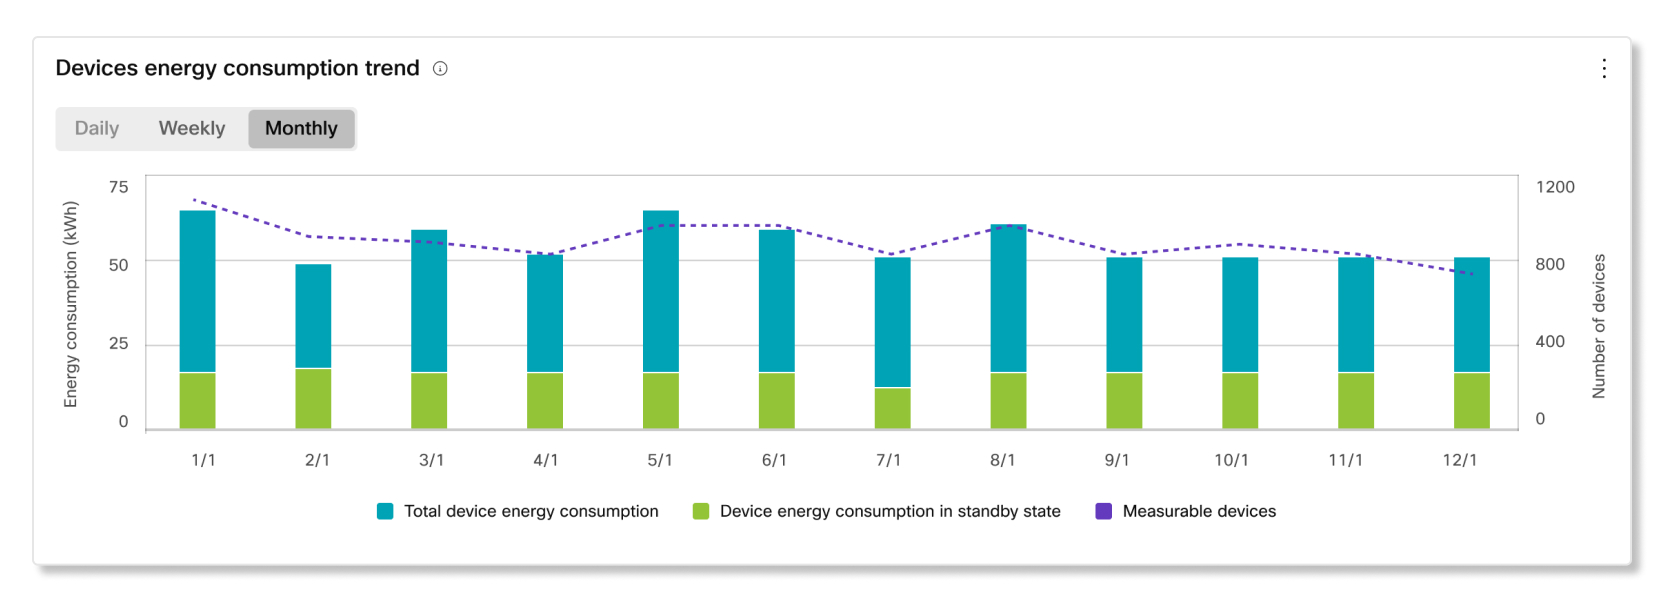 Tendenza del consumo energetico dei dispositivi nelle analisi di sostenibilità